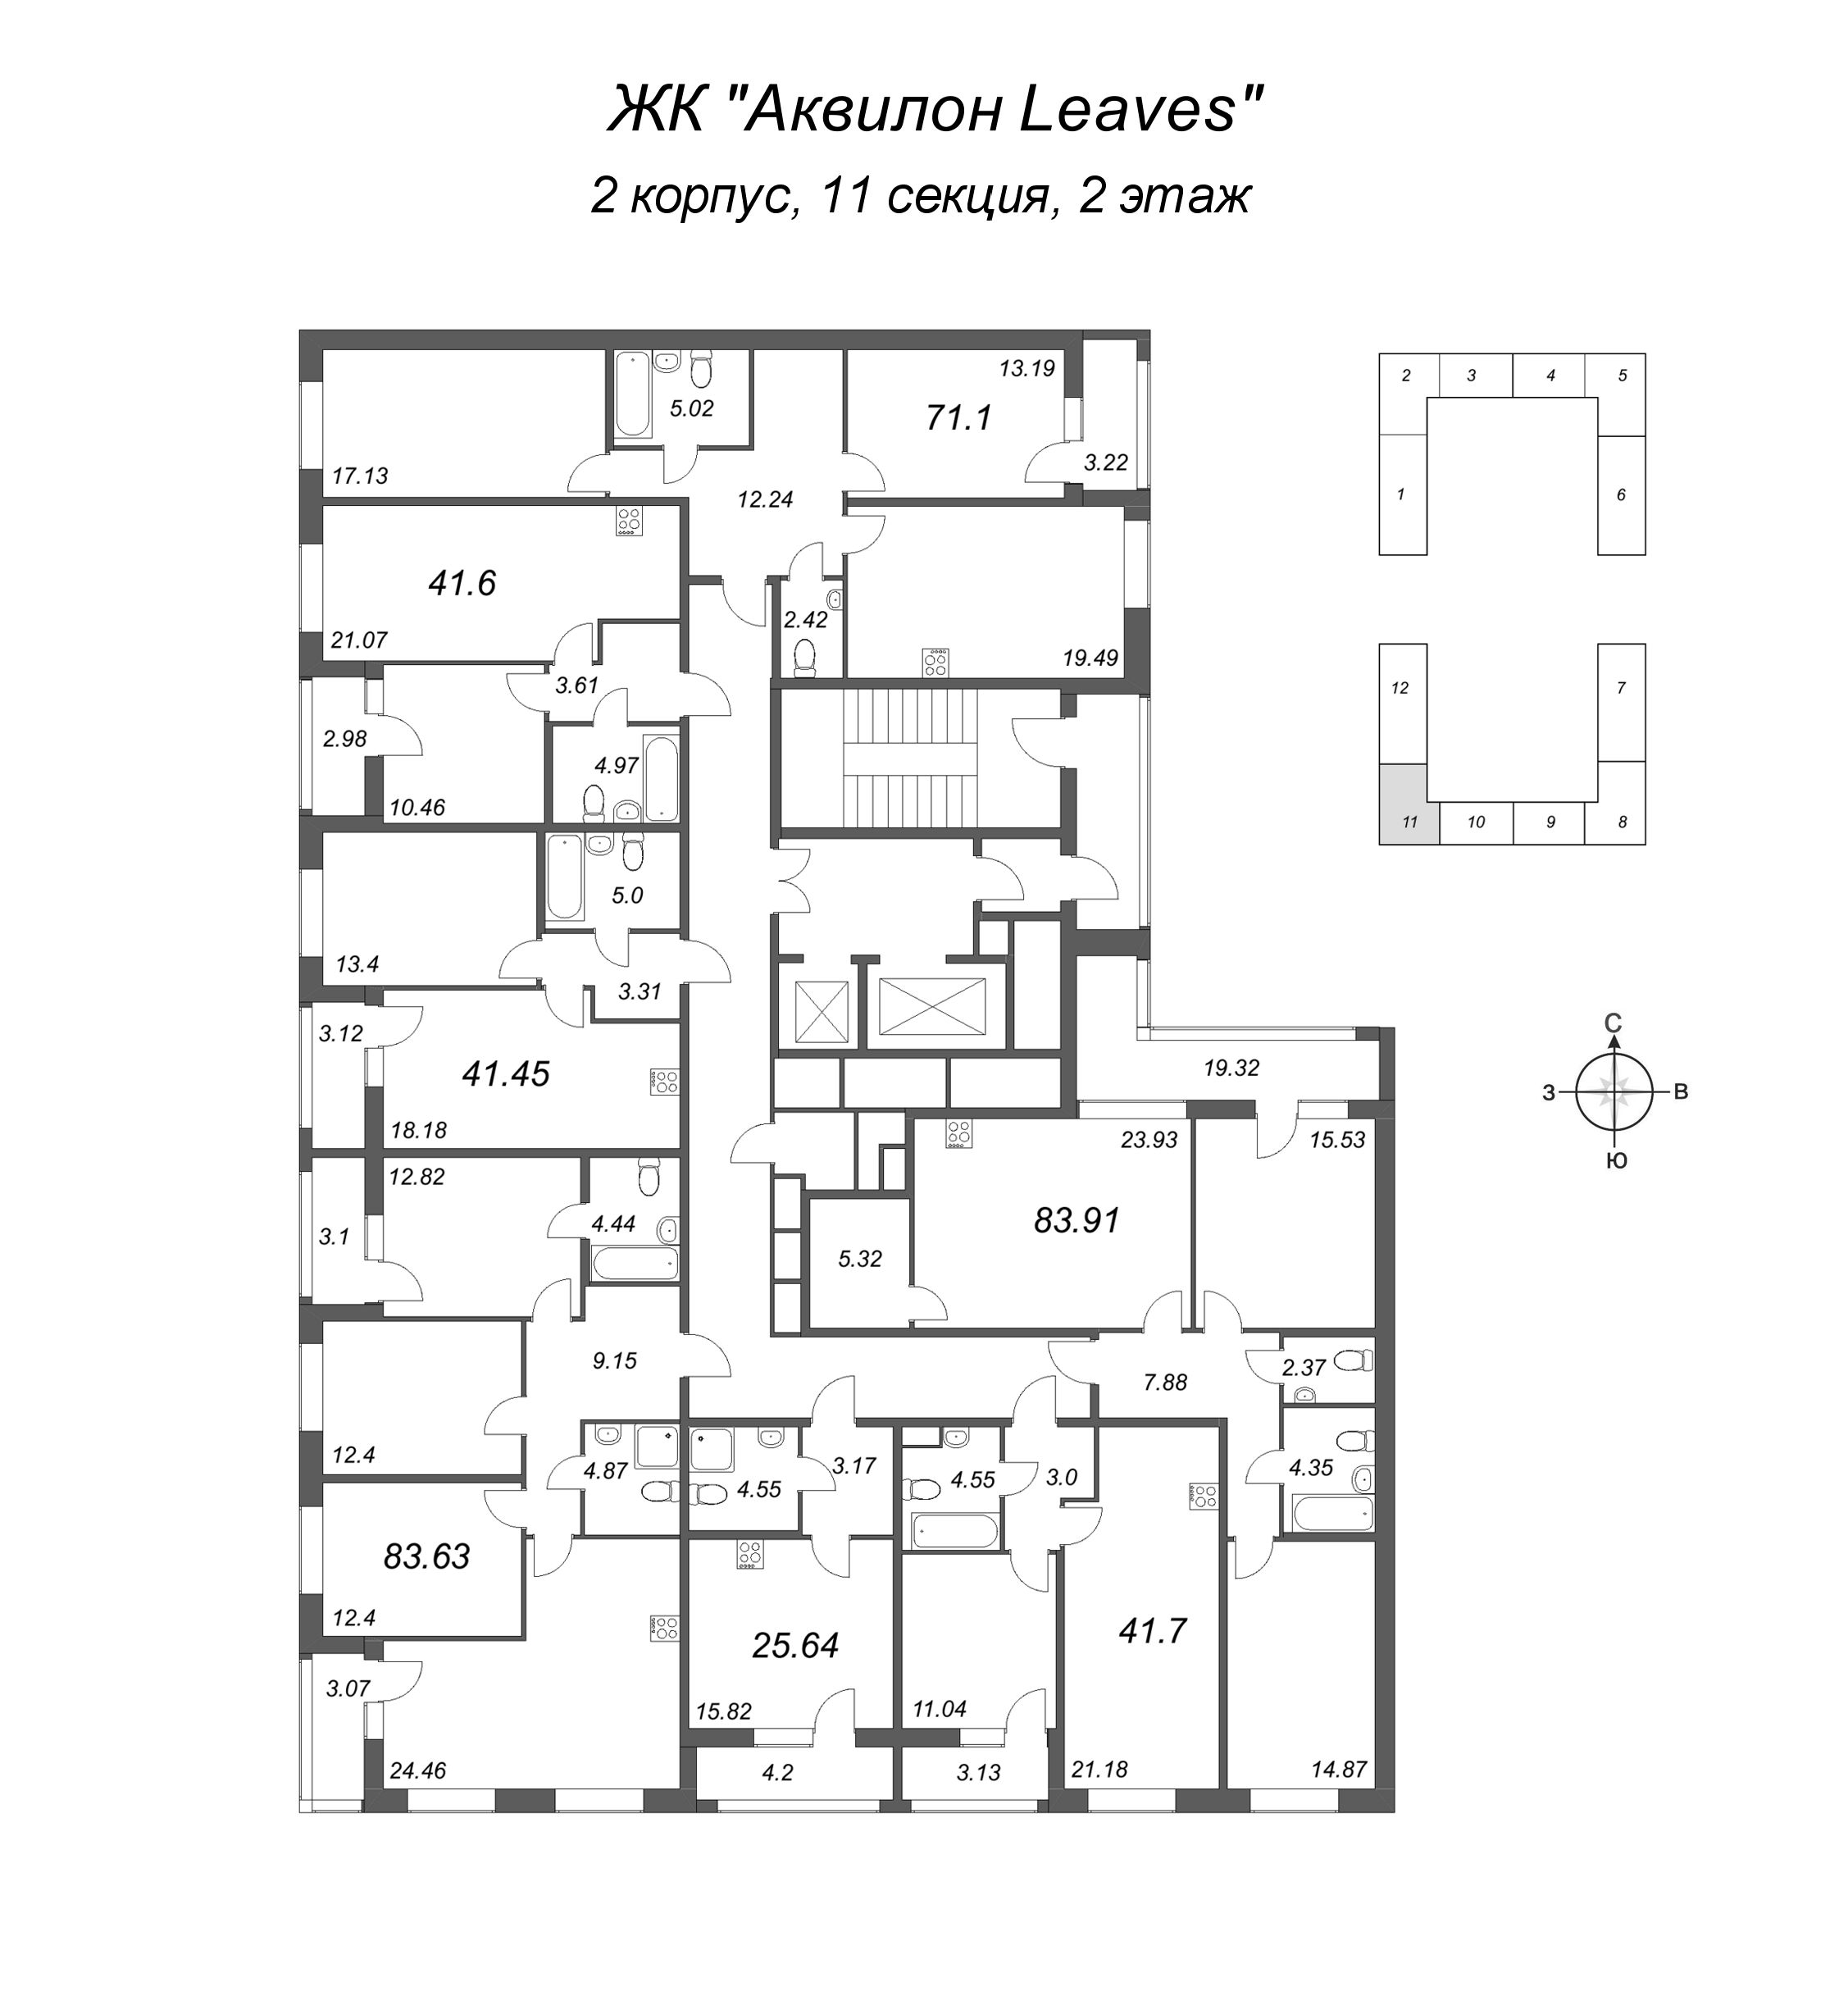 2-комнатная (Евро) квартира, 41.7 м² в ЖК "Аквилон Leaves" - планировка этажа